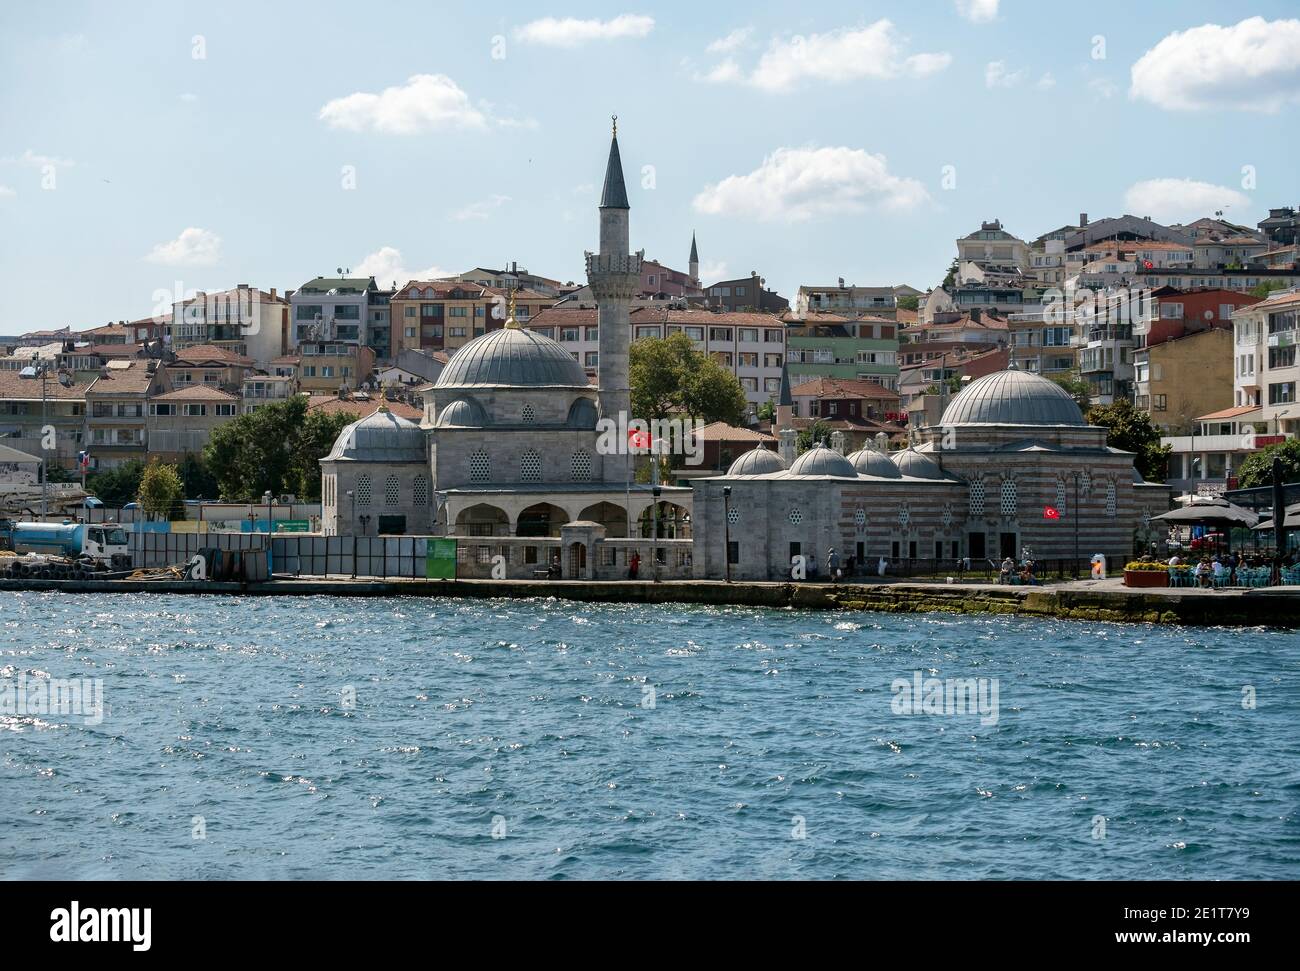 ISTANBUL, TÜRKEI - 06. August 2019 : Blick auf die Semsi Pasa Camii Moschee in Istanbul Türkei,. Mimar Sinans Werk. Stockfoto